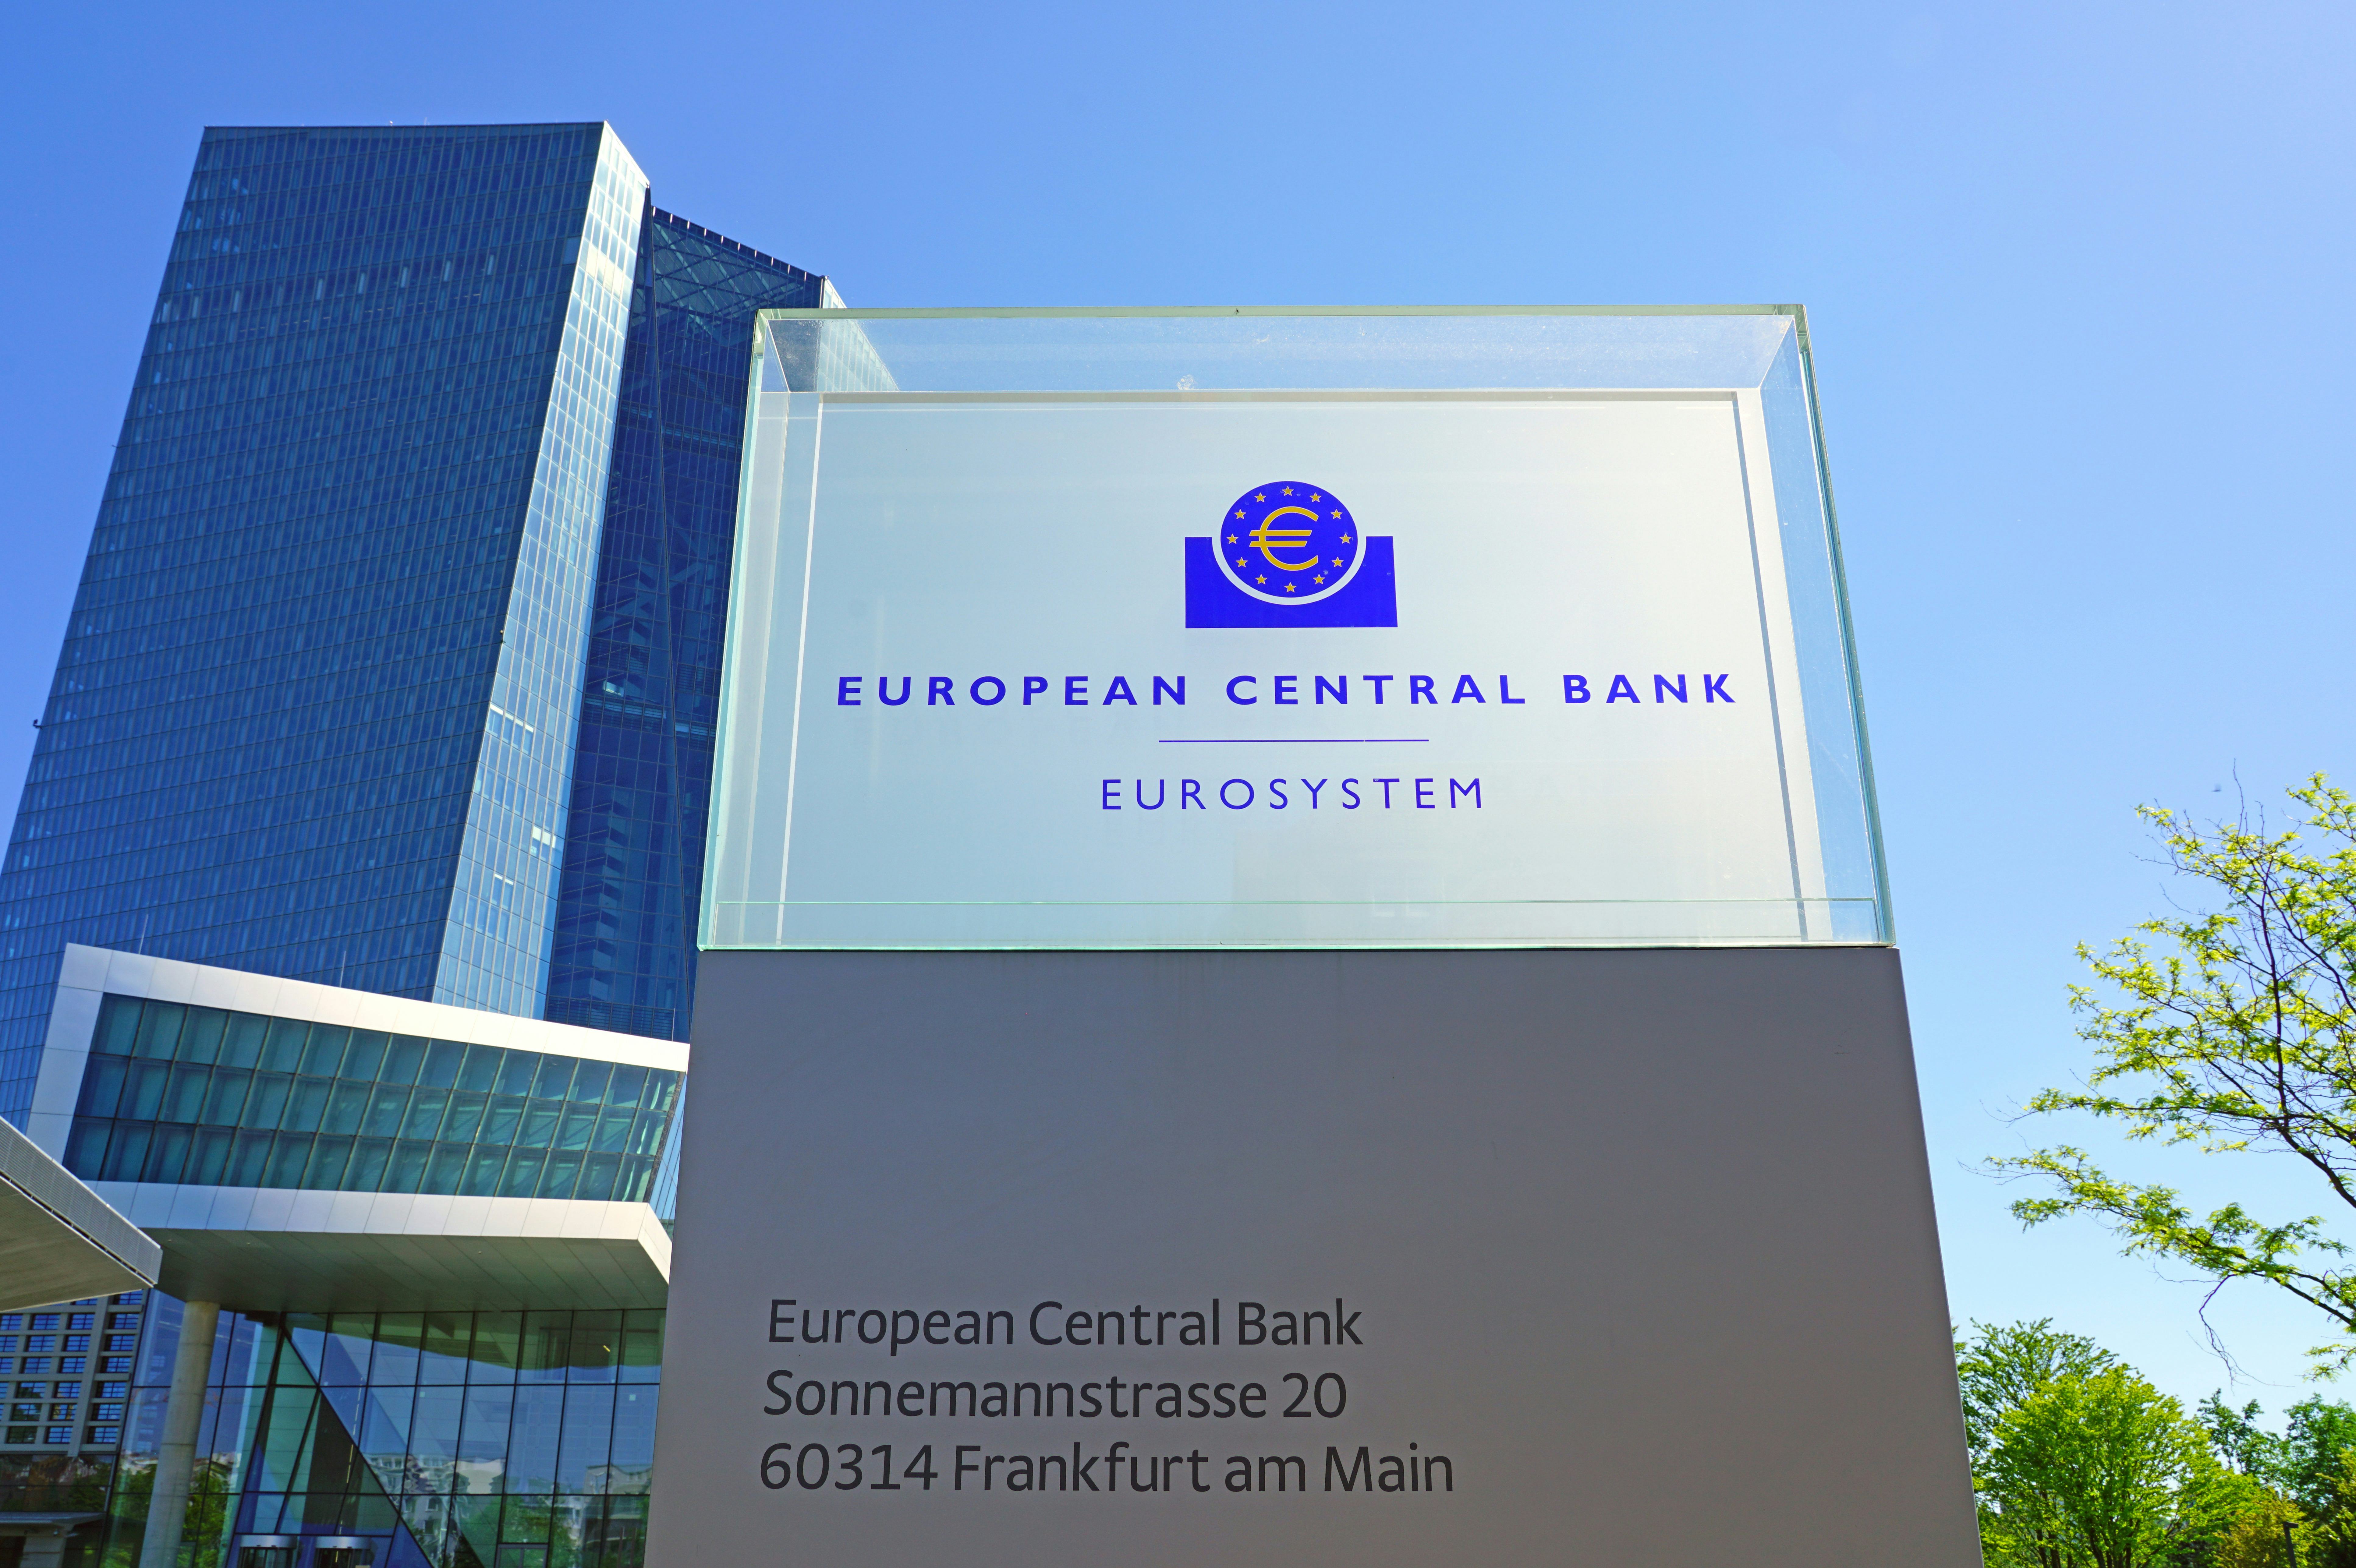 Renteverhoging kan al in juli, verwacht vicepresident ECB